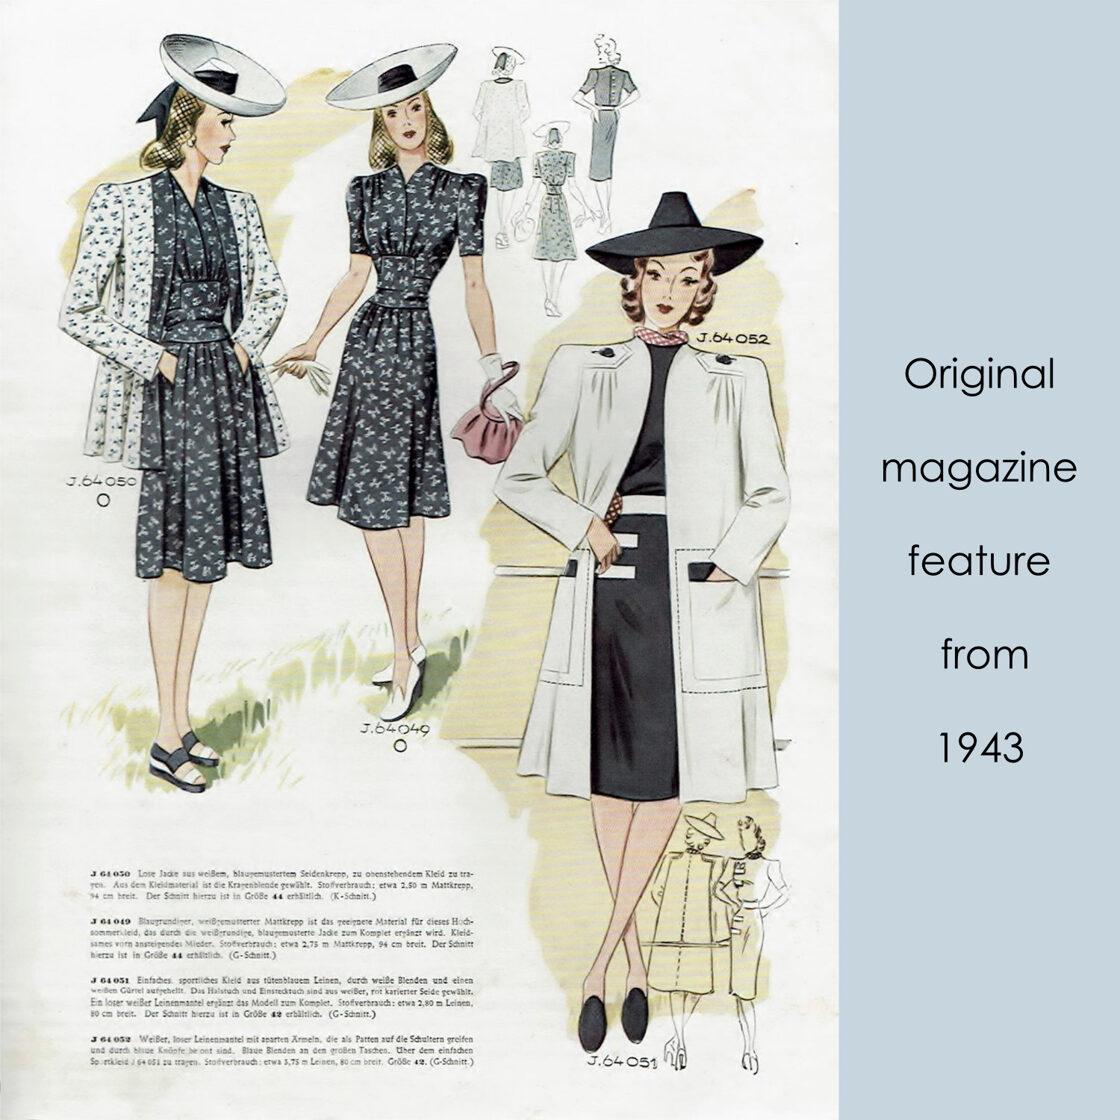 1941 Dress & Jacket pattern in 96 cm/ 37.8" bust